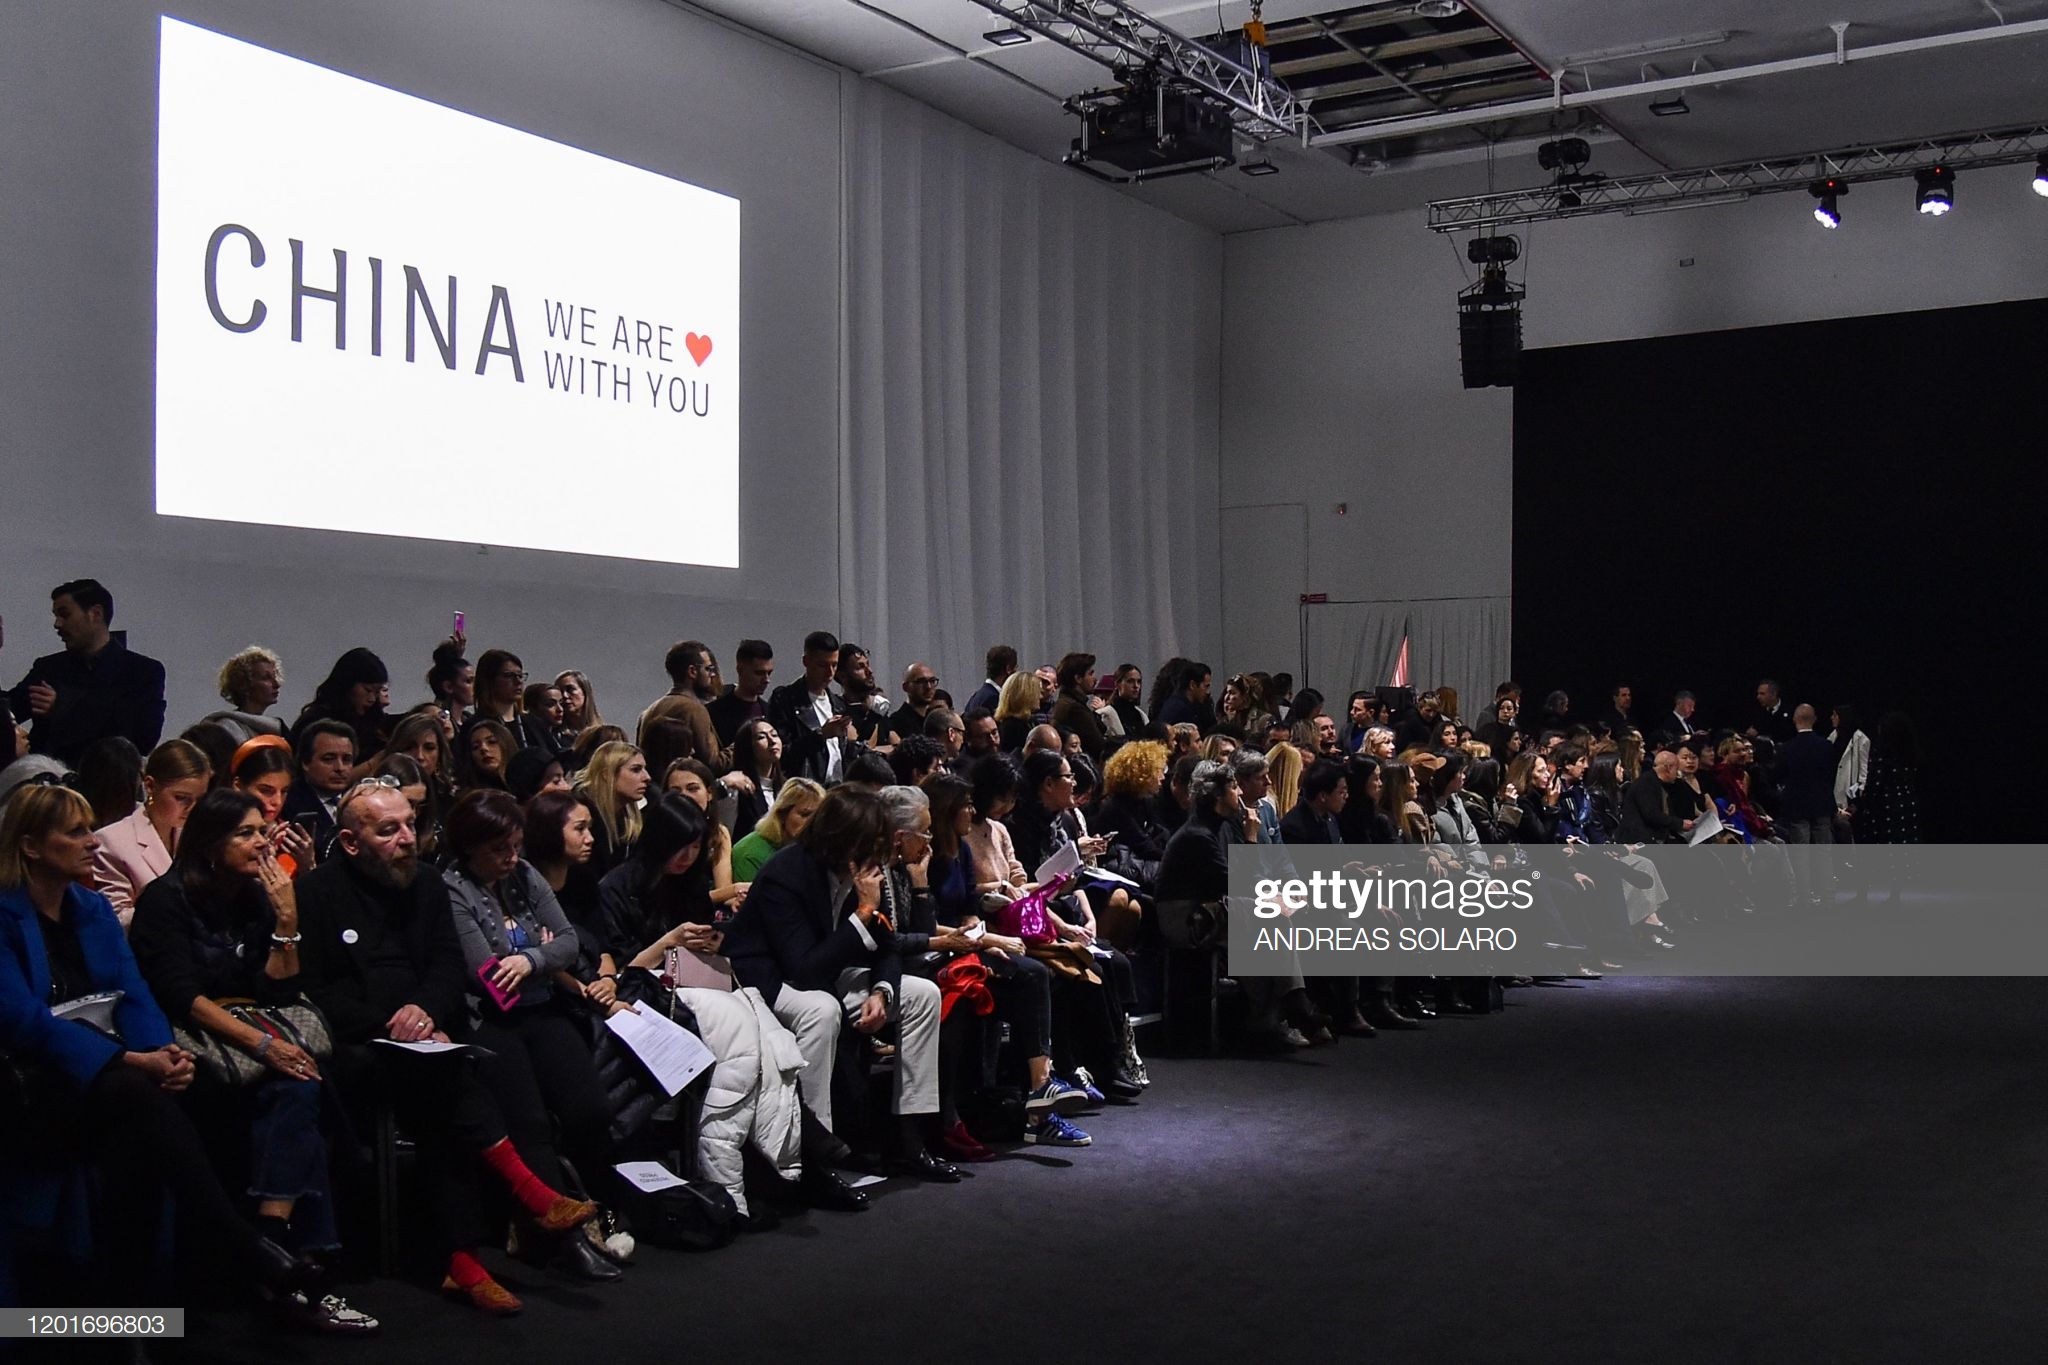 Buổi trình diễn thời trang mang tên "China, We are with you" của NTK Han Wen tại tuần lễ thời trang Milan